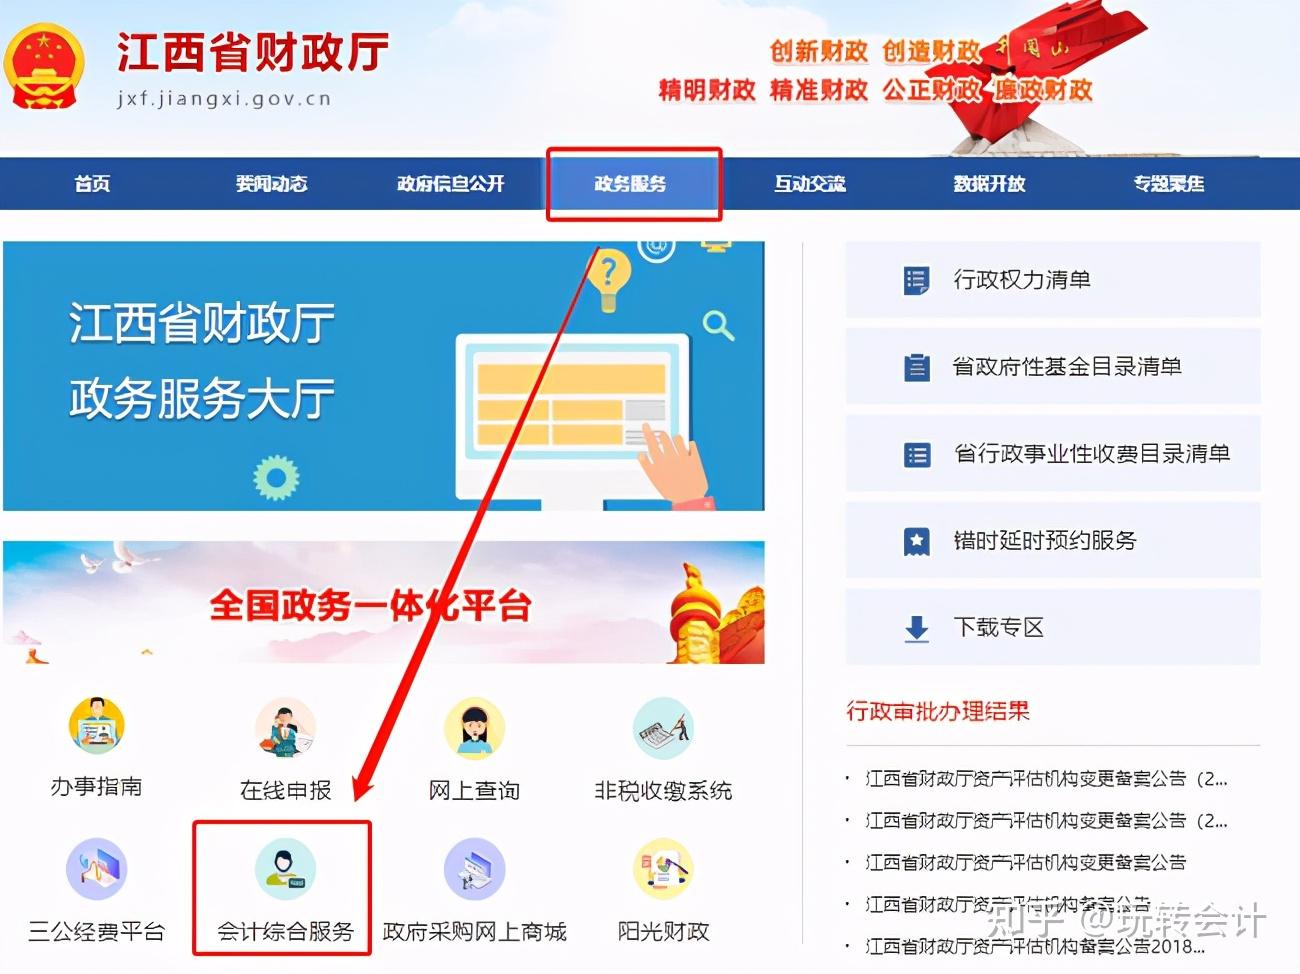 在这个时间内,江西的小伙伴可以通过江西省财政厅门户网站(http